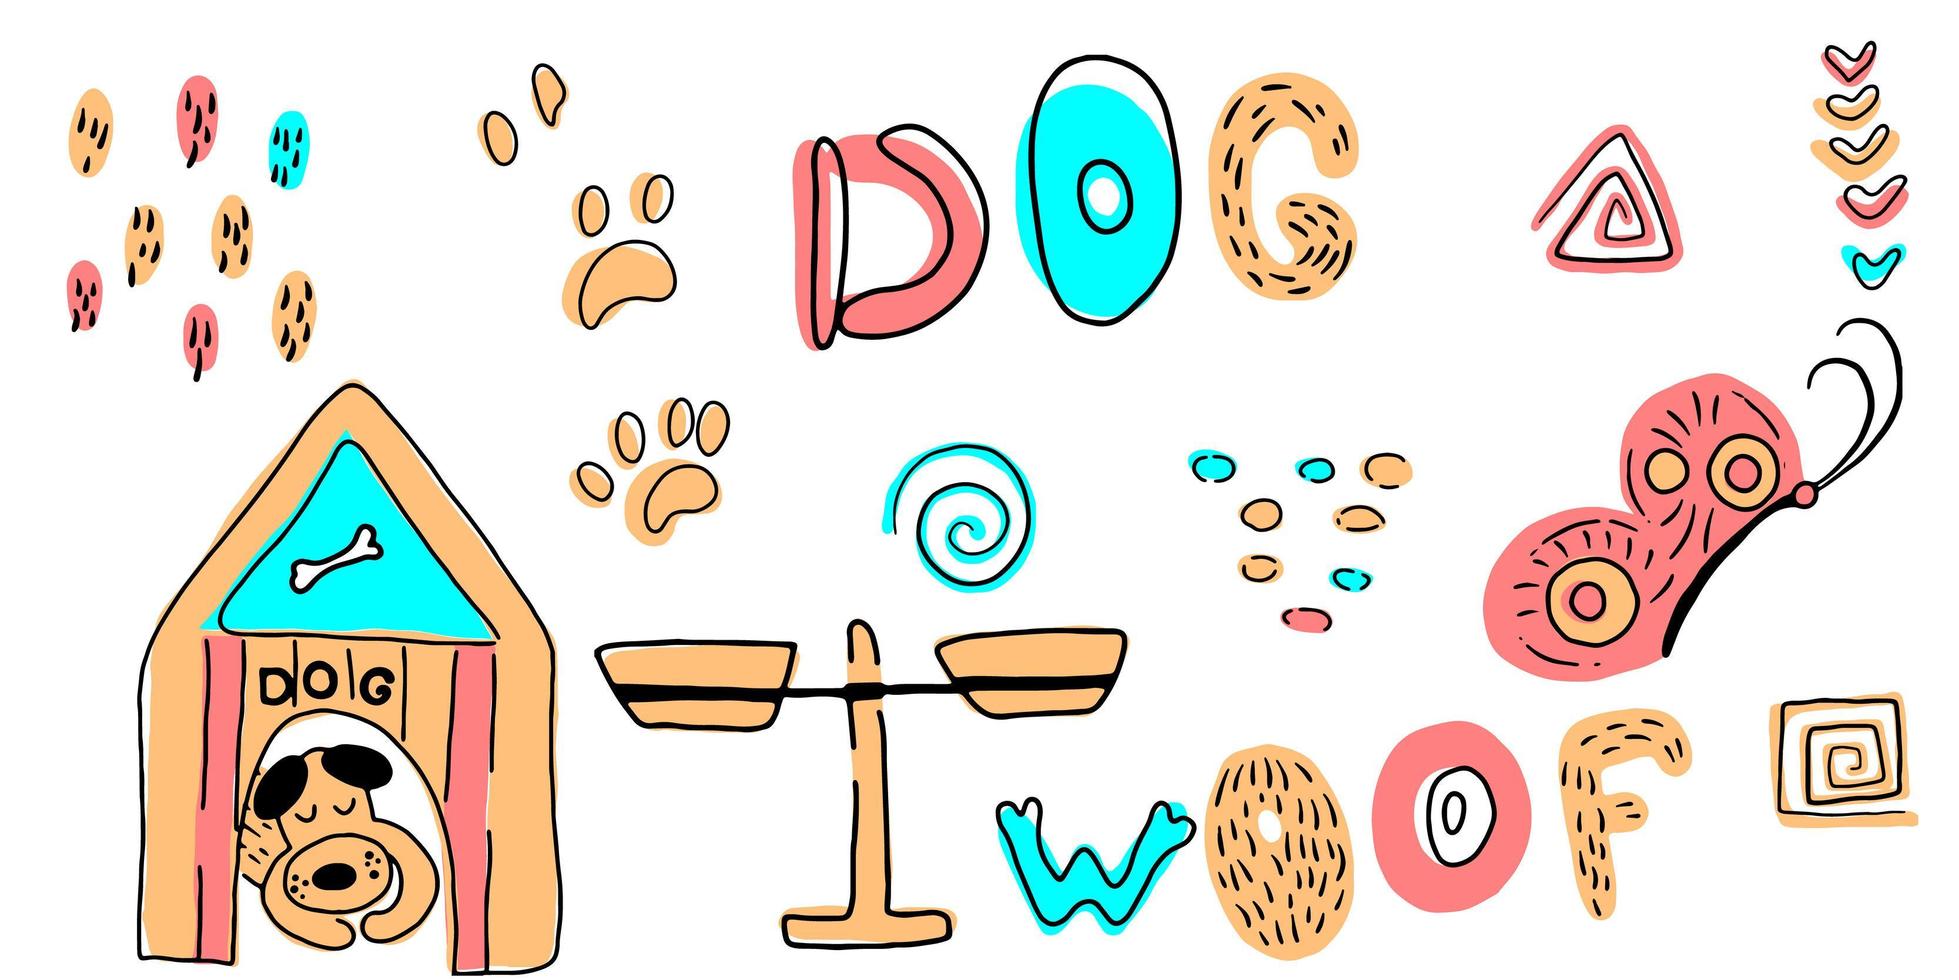 conjunto de vetores de cachorro bonito dos desenhos animados e letras em estilo escandinavo em um fundo branco. conjunto com cães para crianças. impressão de cães. animais de bebê fofos.